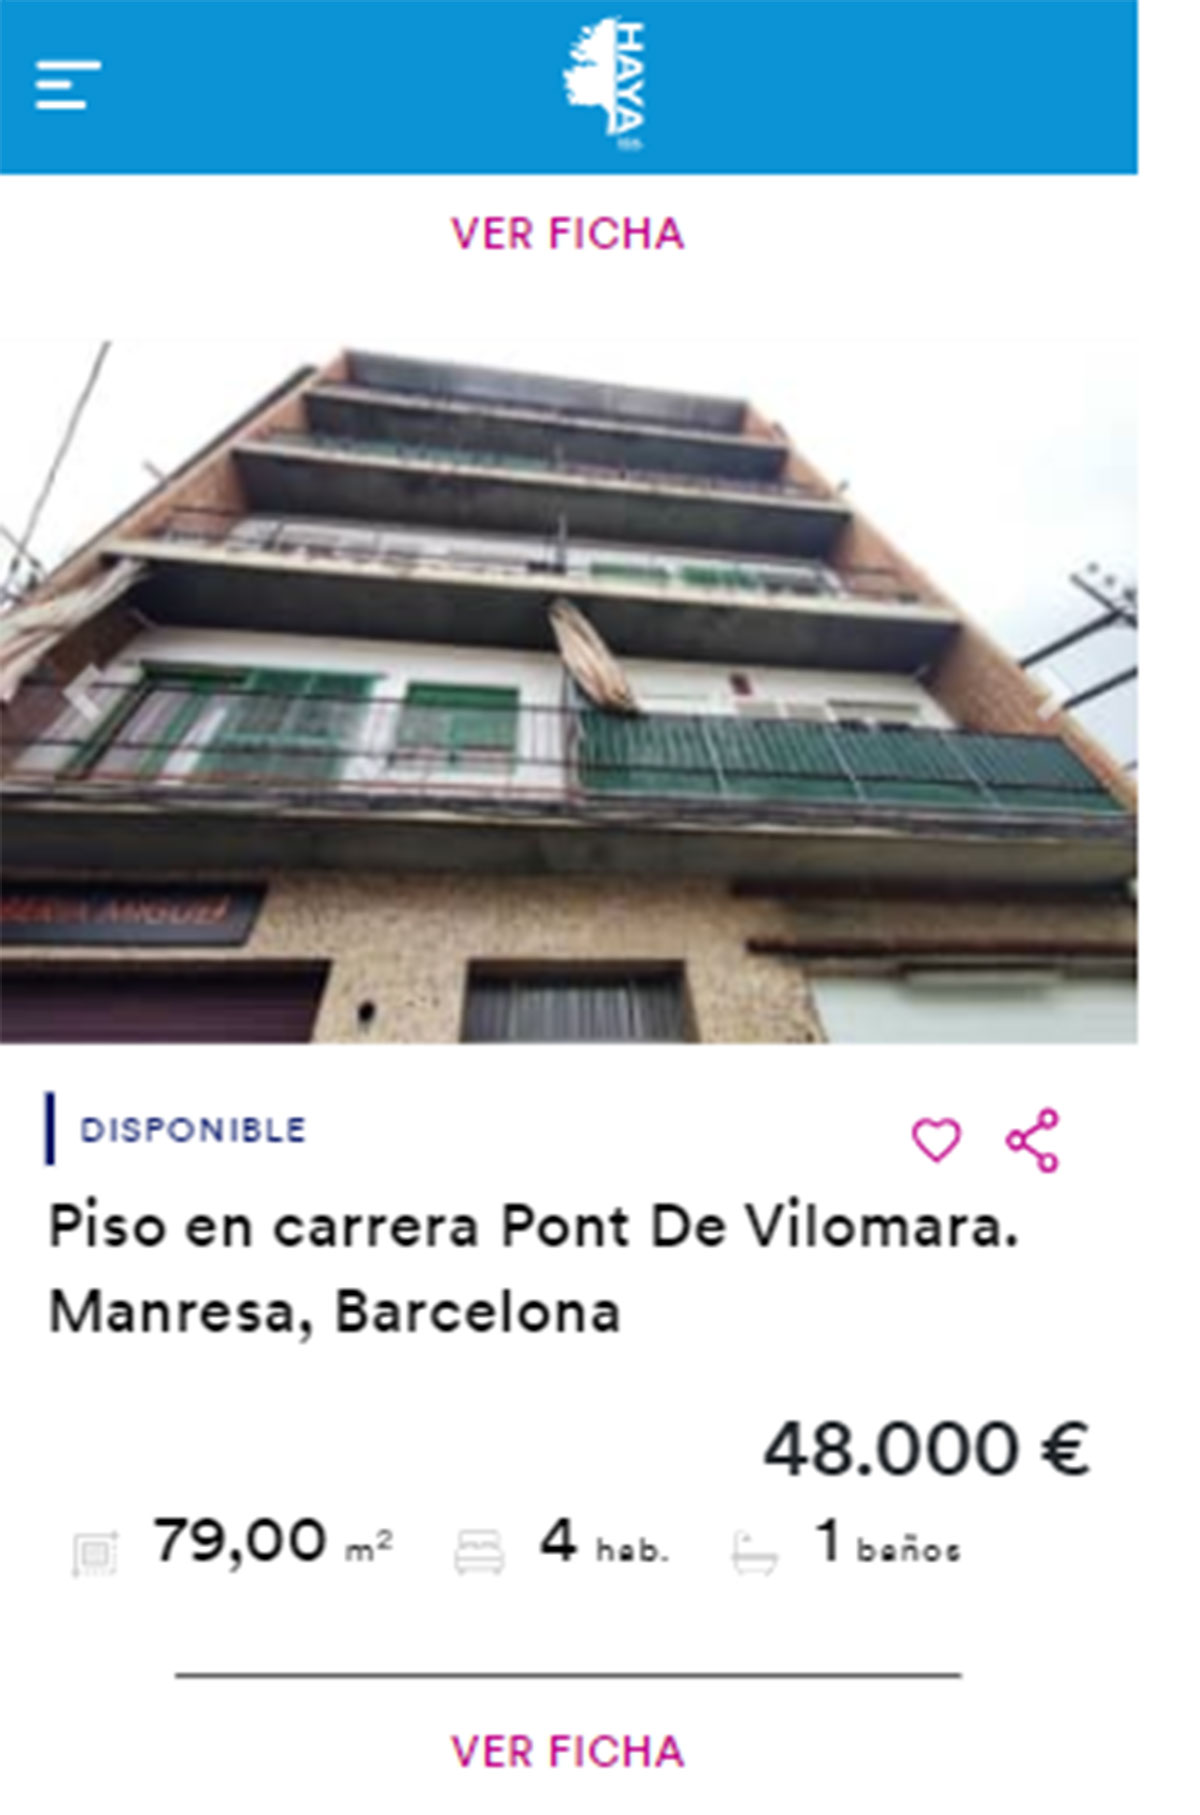 Piso en Barcelona por 48.000 euros